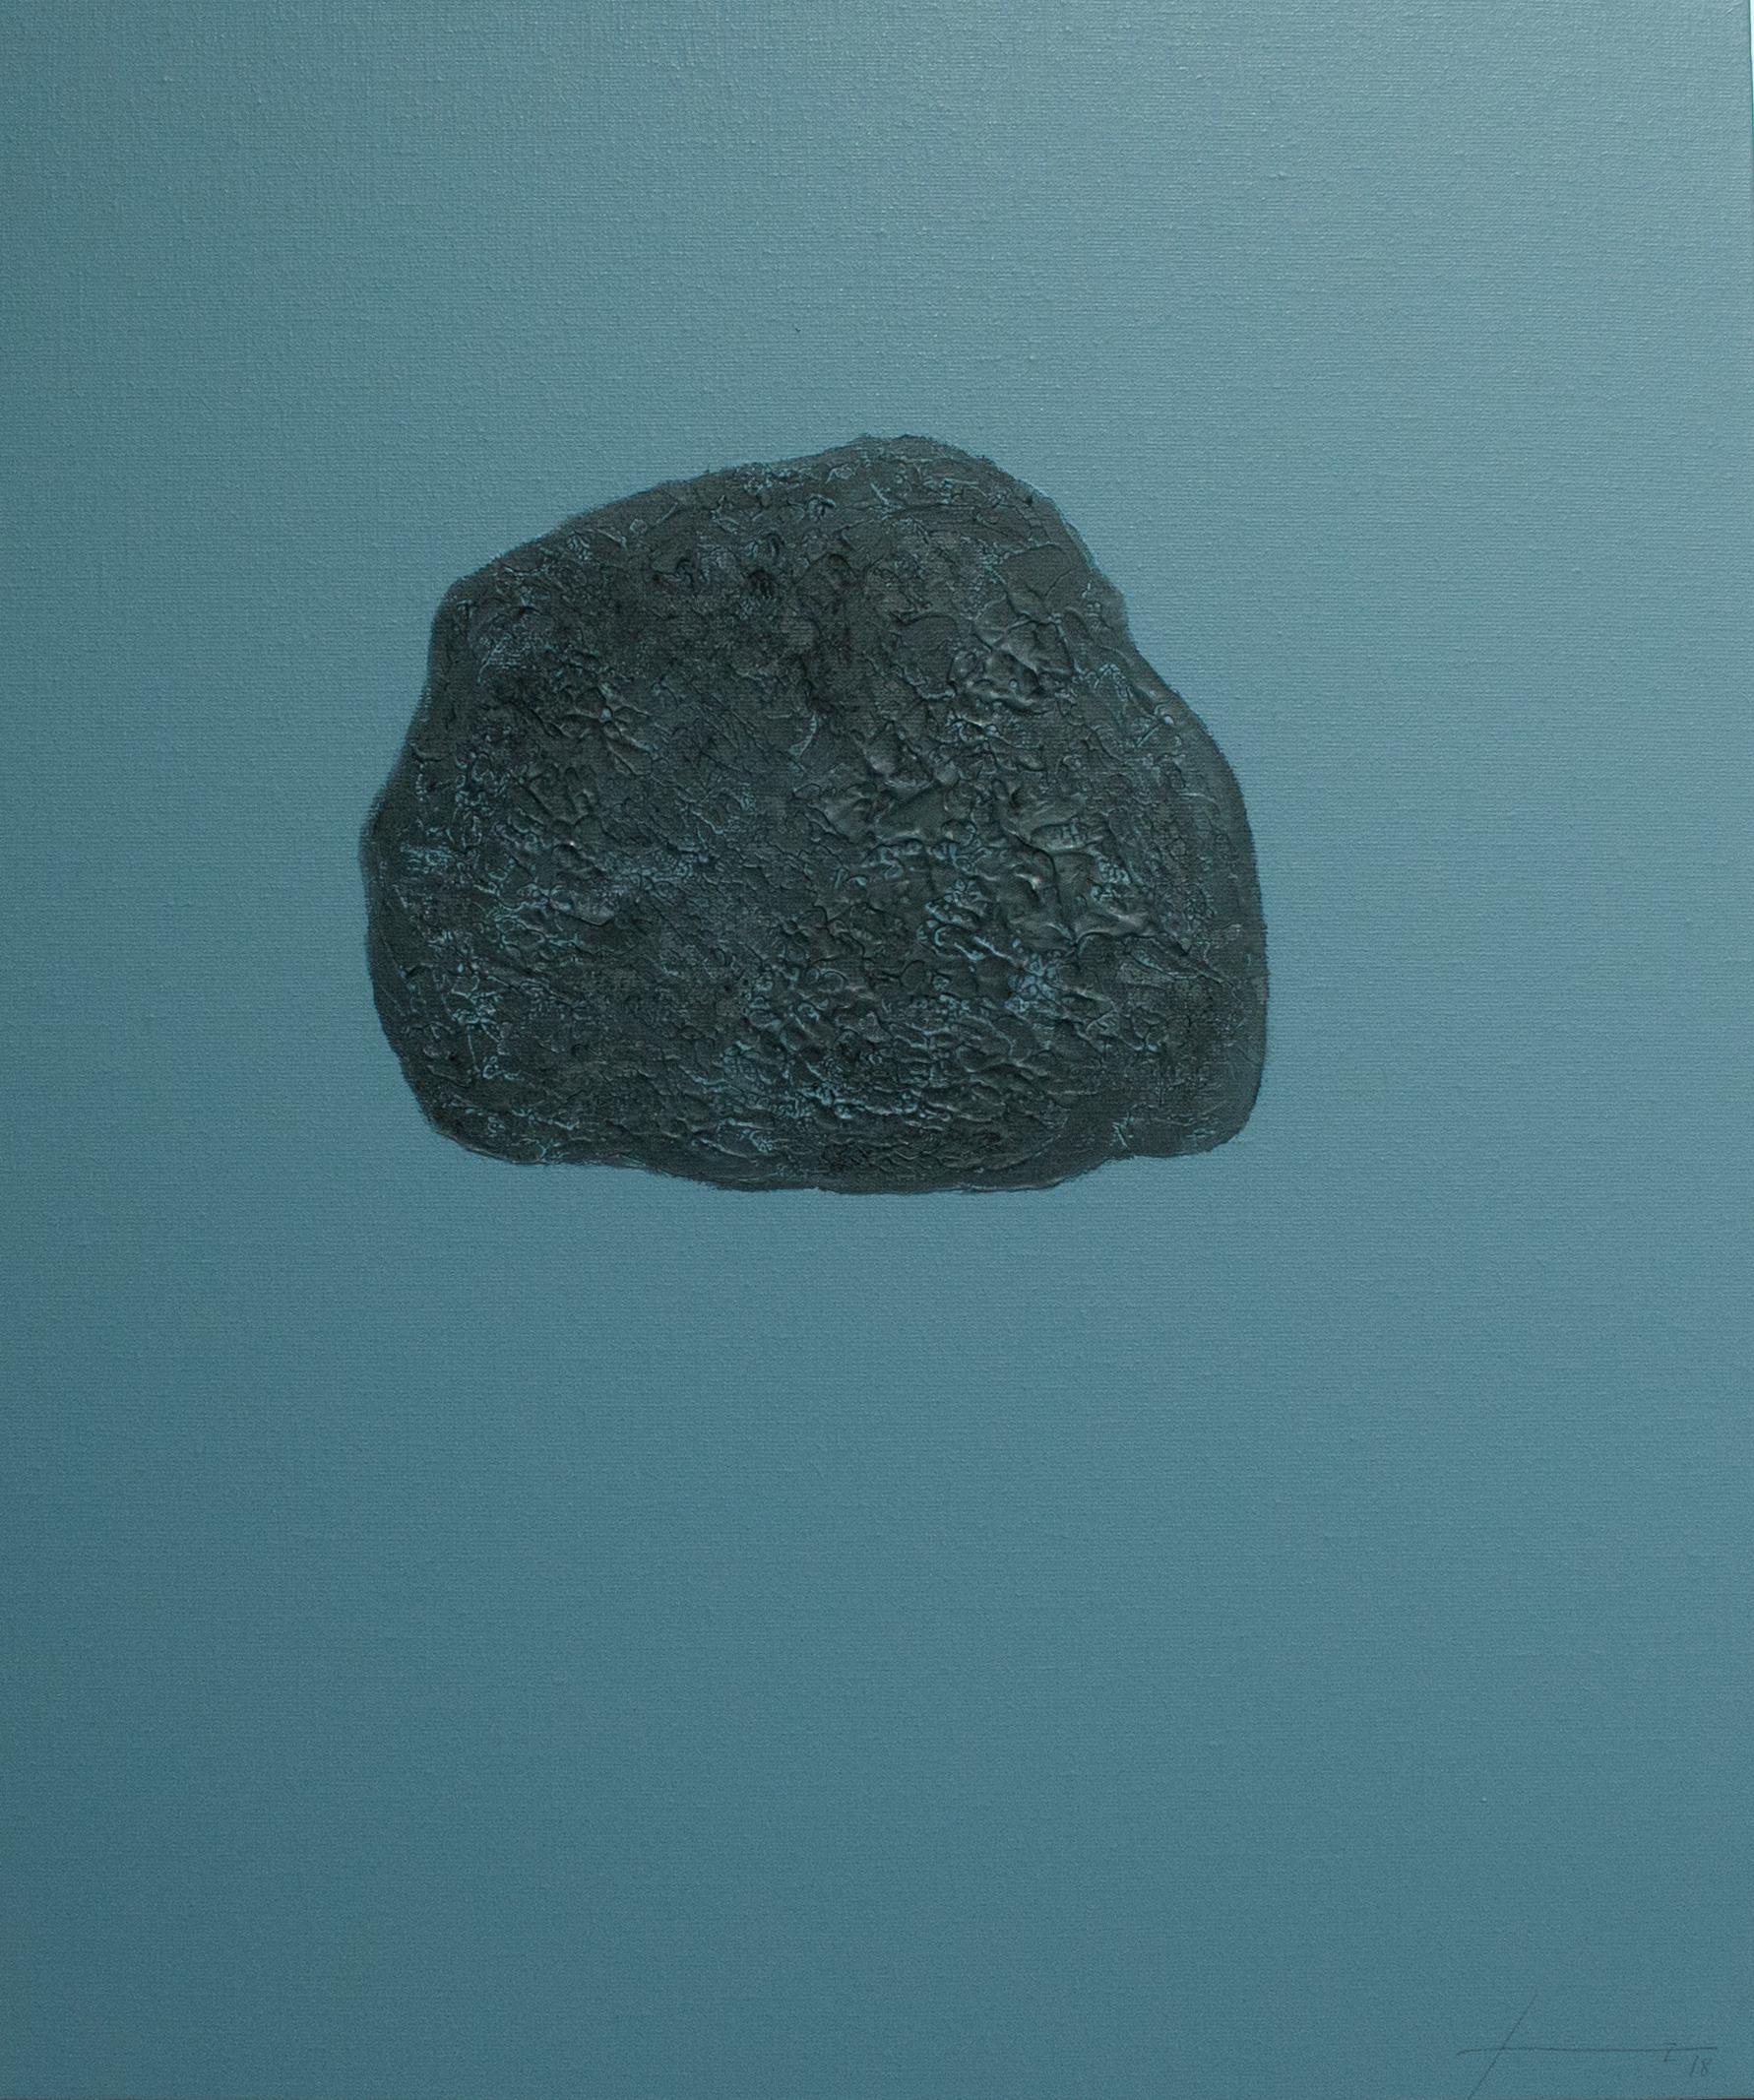 Stones XXX (I) - 21st Century, Contemporary, Abstract Painting, Mixed Media